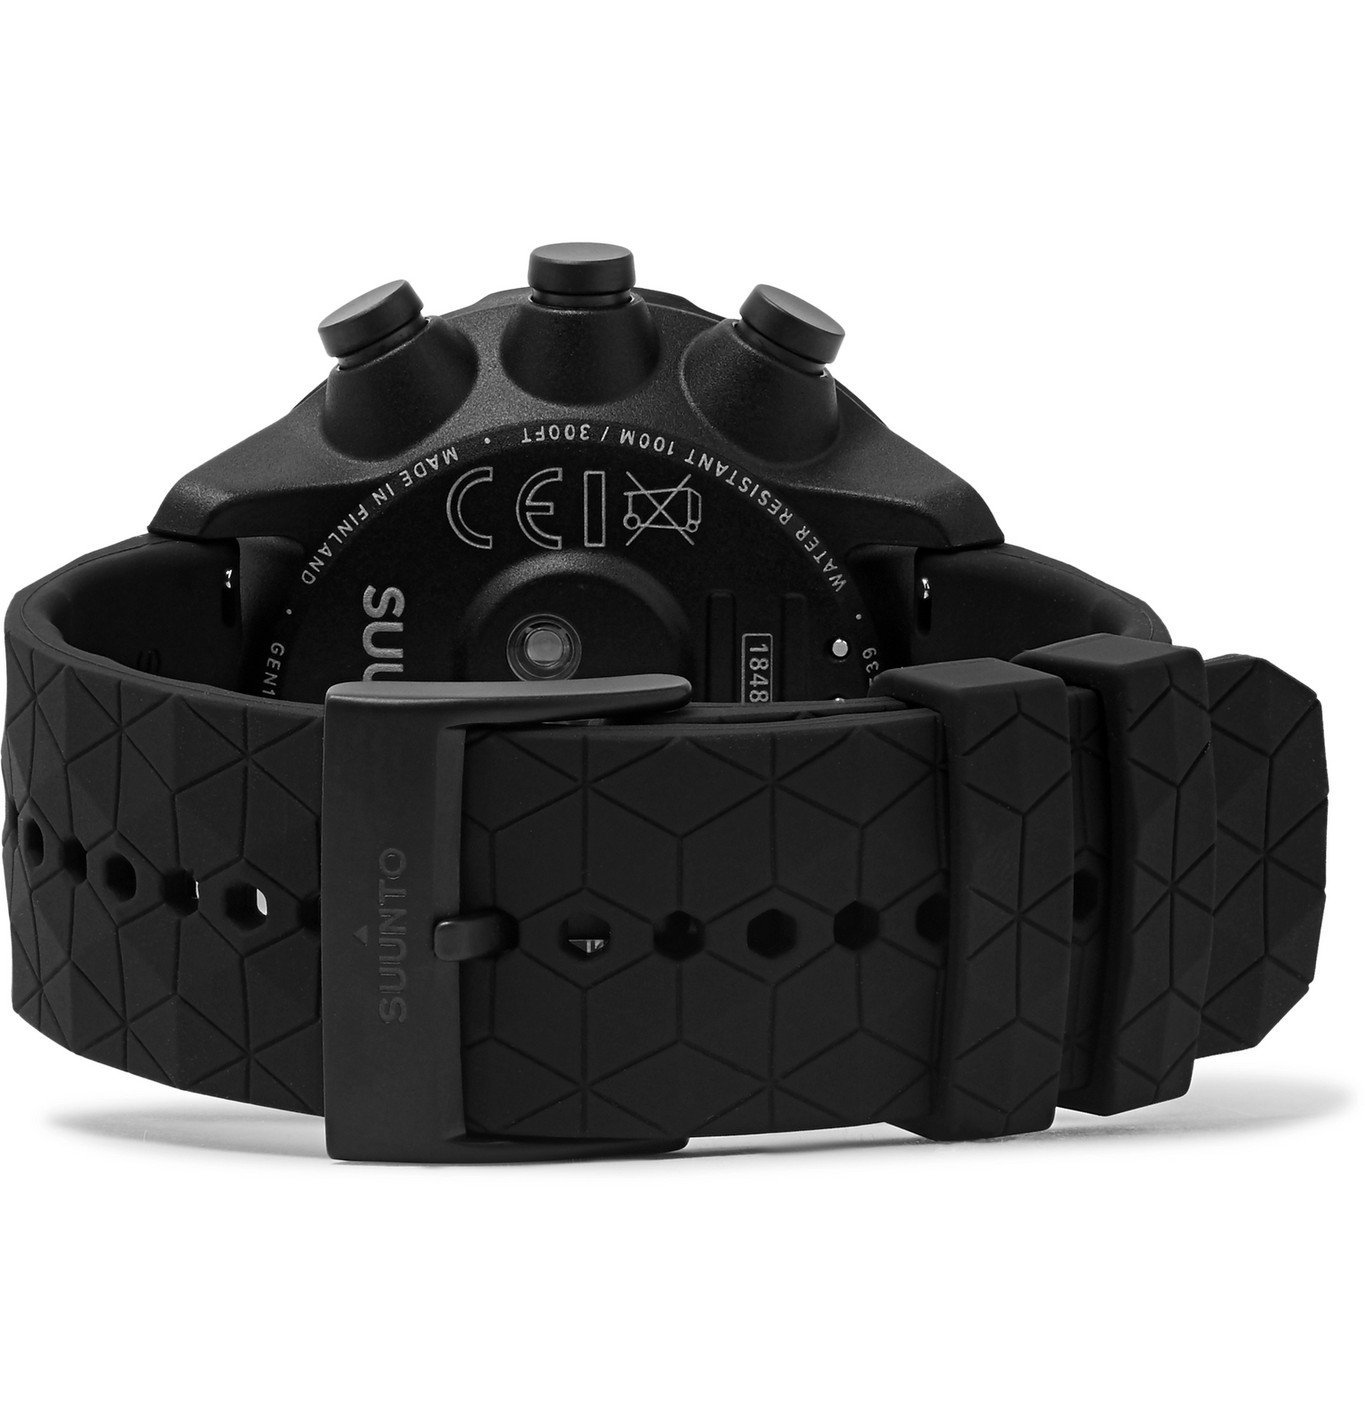 Suunto - 9 Baro GPS Titanium and Silicone Digital Watch - Black Suunto